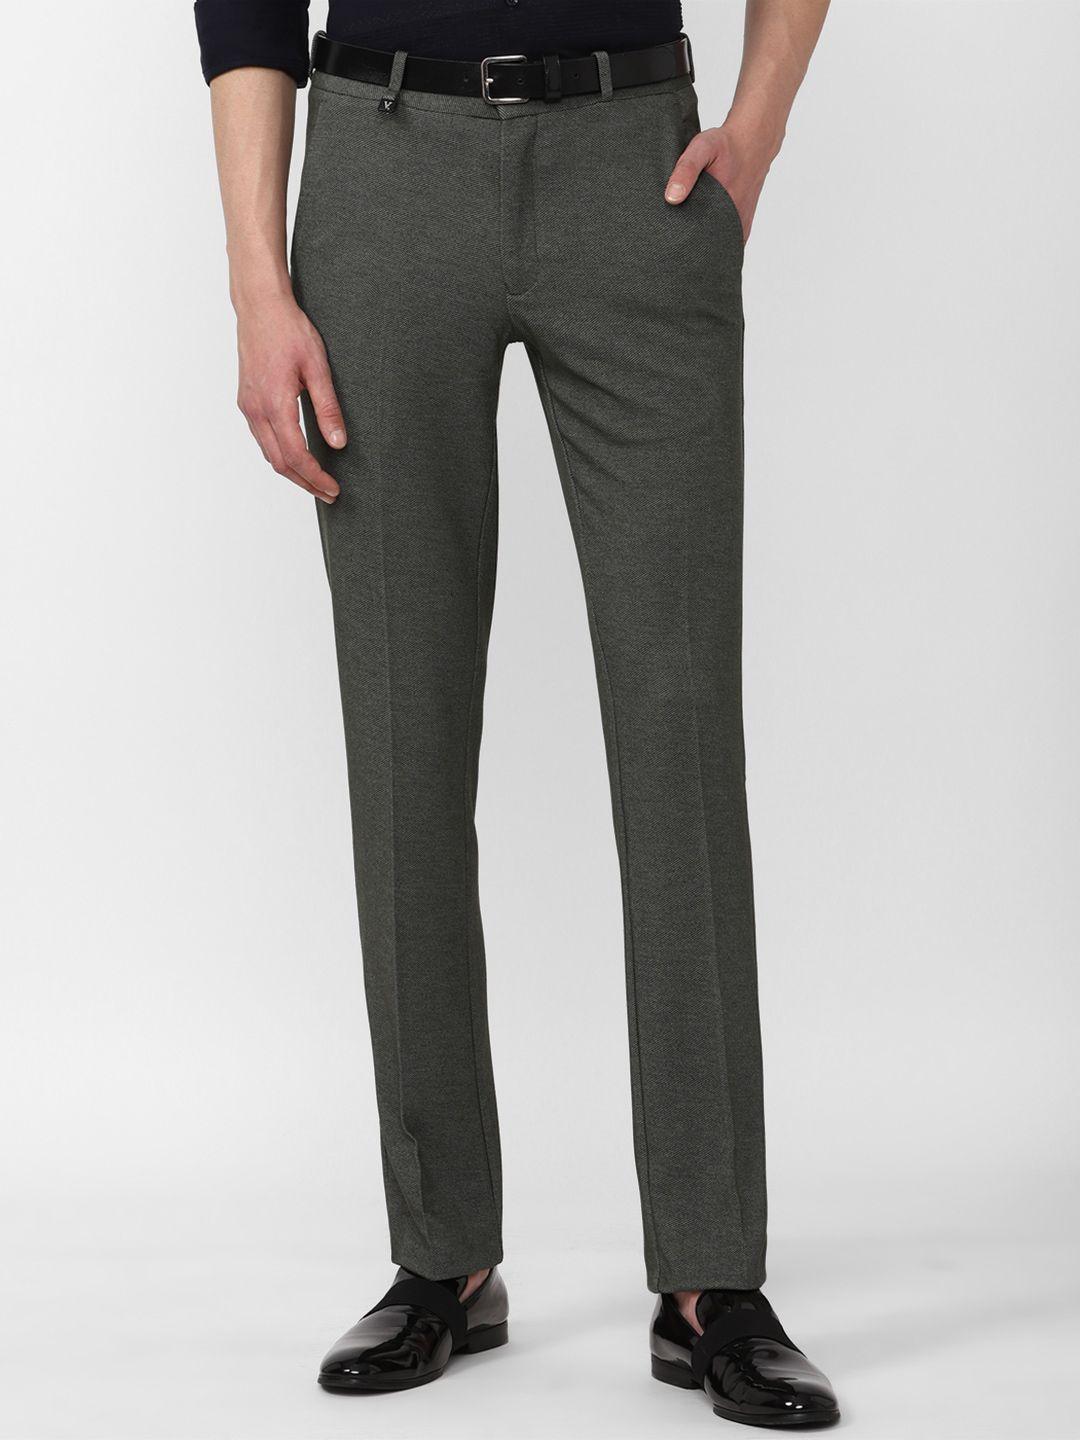 v-dot-men-mid-rise-skinny-fit-trouser